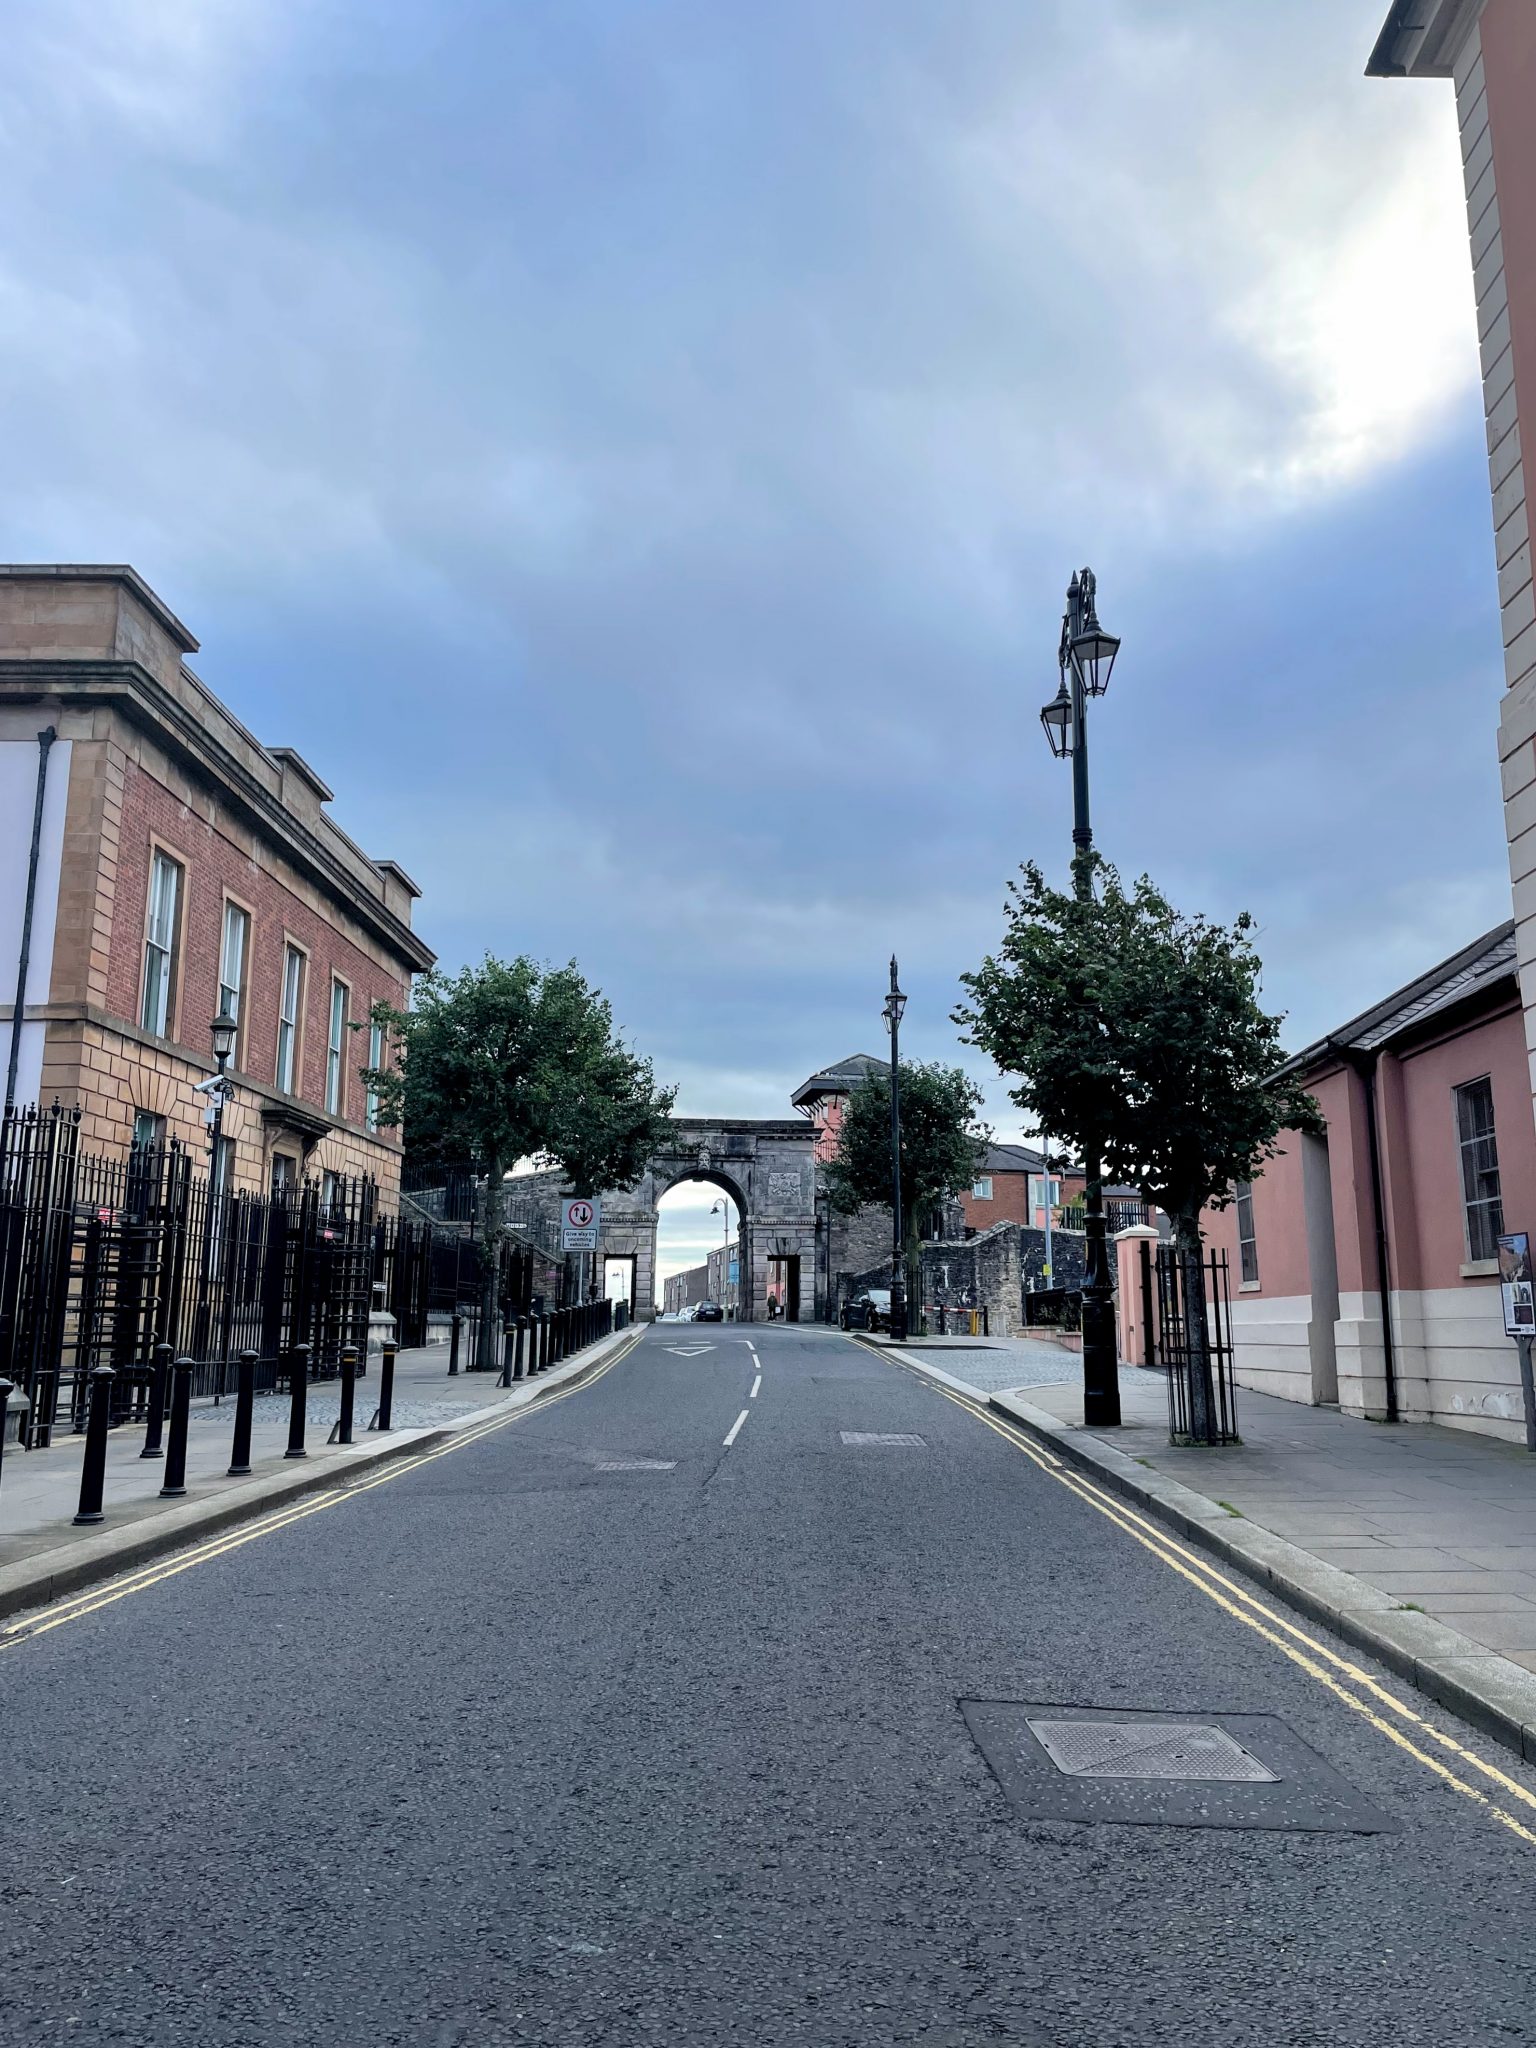 Bishop's Street, Derry